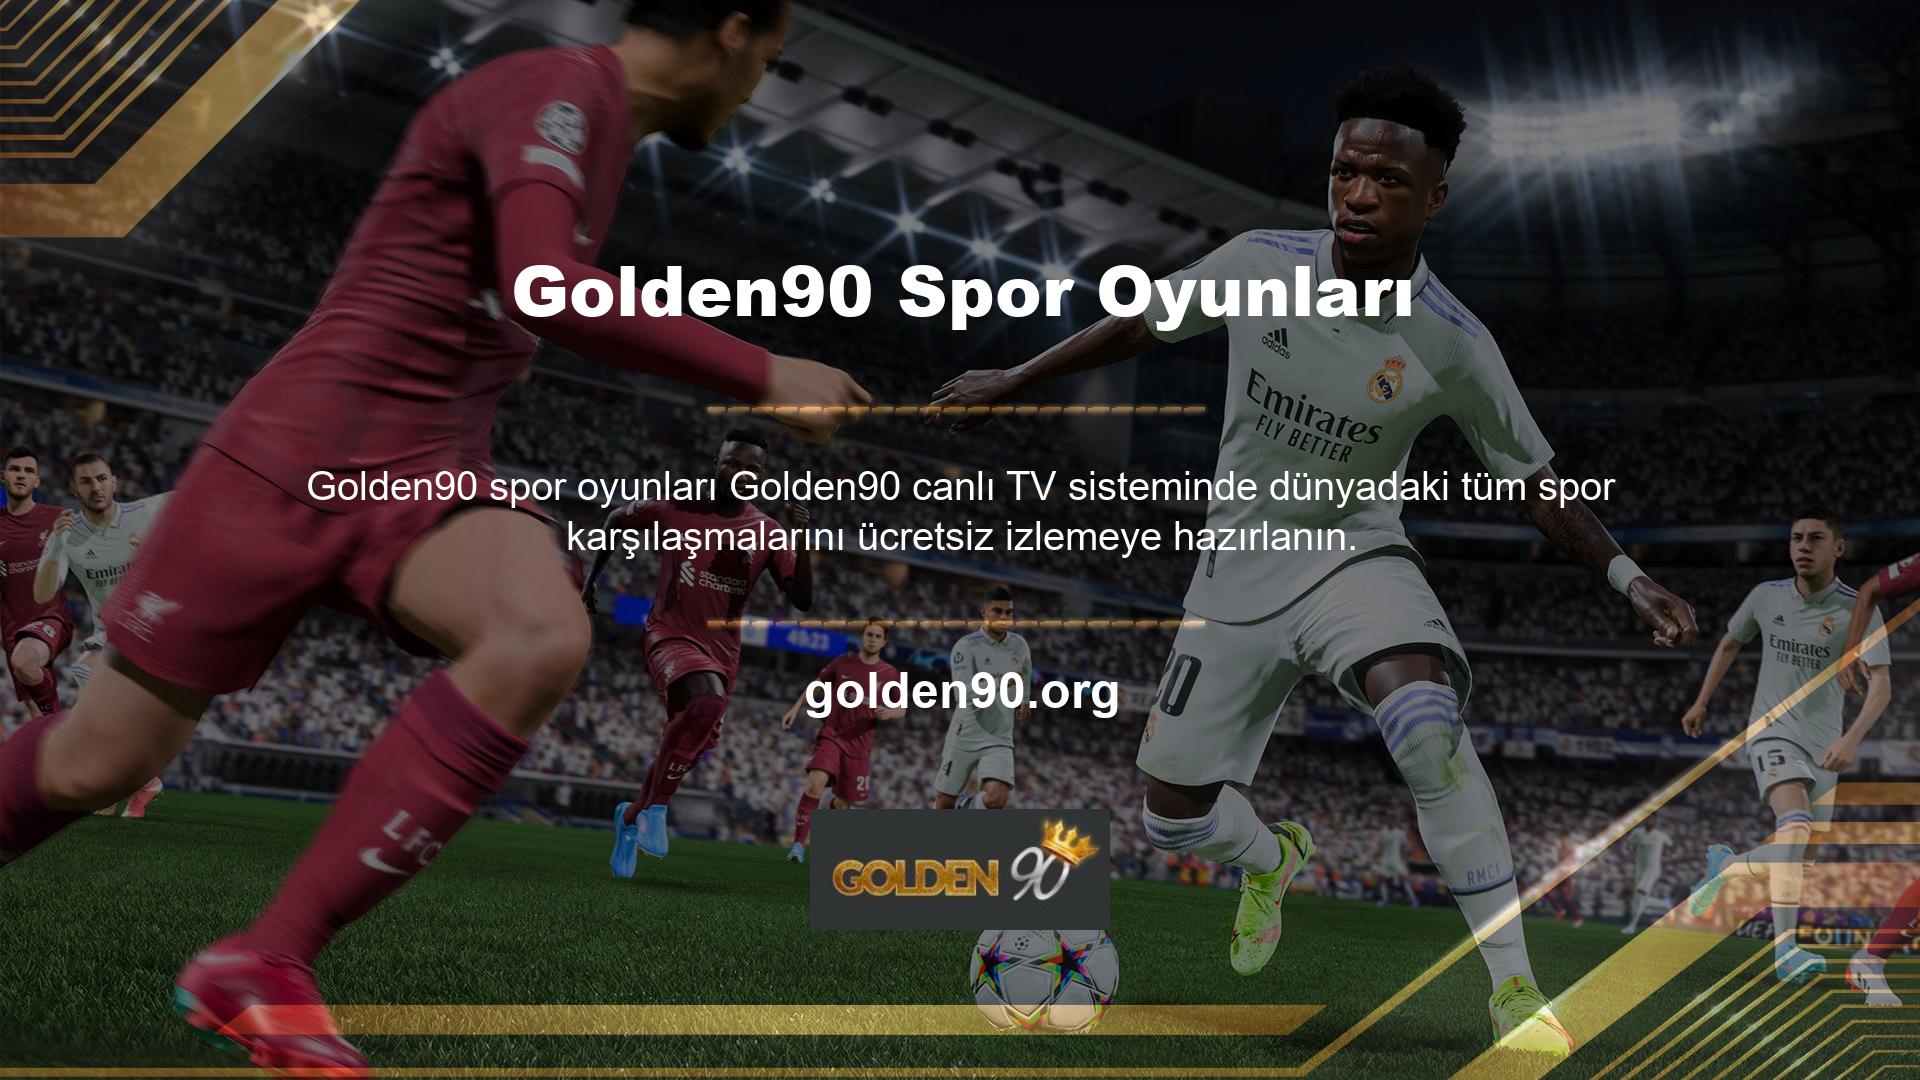 Çoğu kişi tarafından canlı olarak izlenen Golden90 spor oyunlarının bir listesi sunulmaktadır